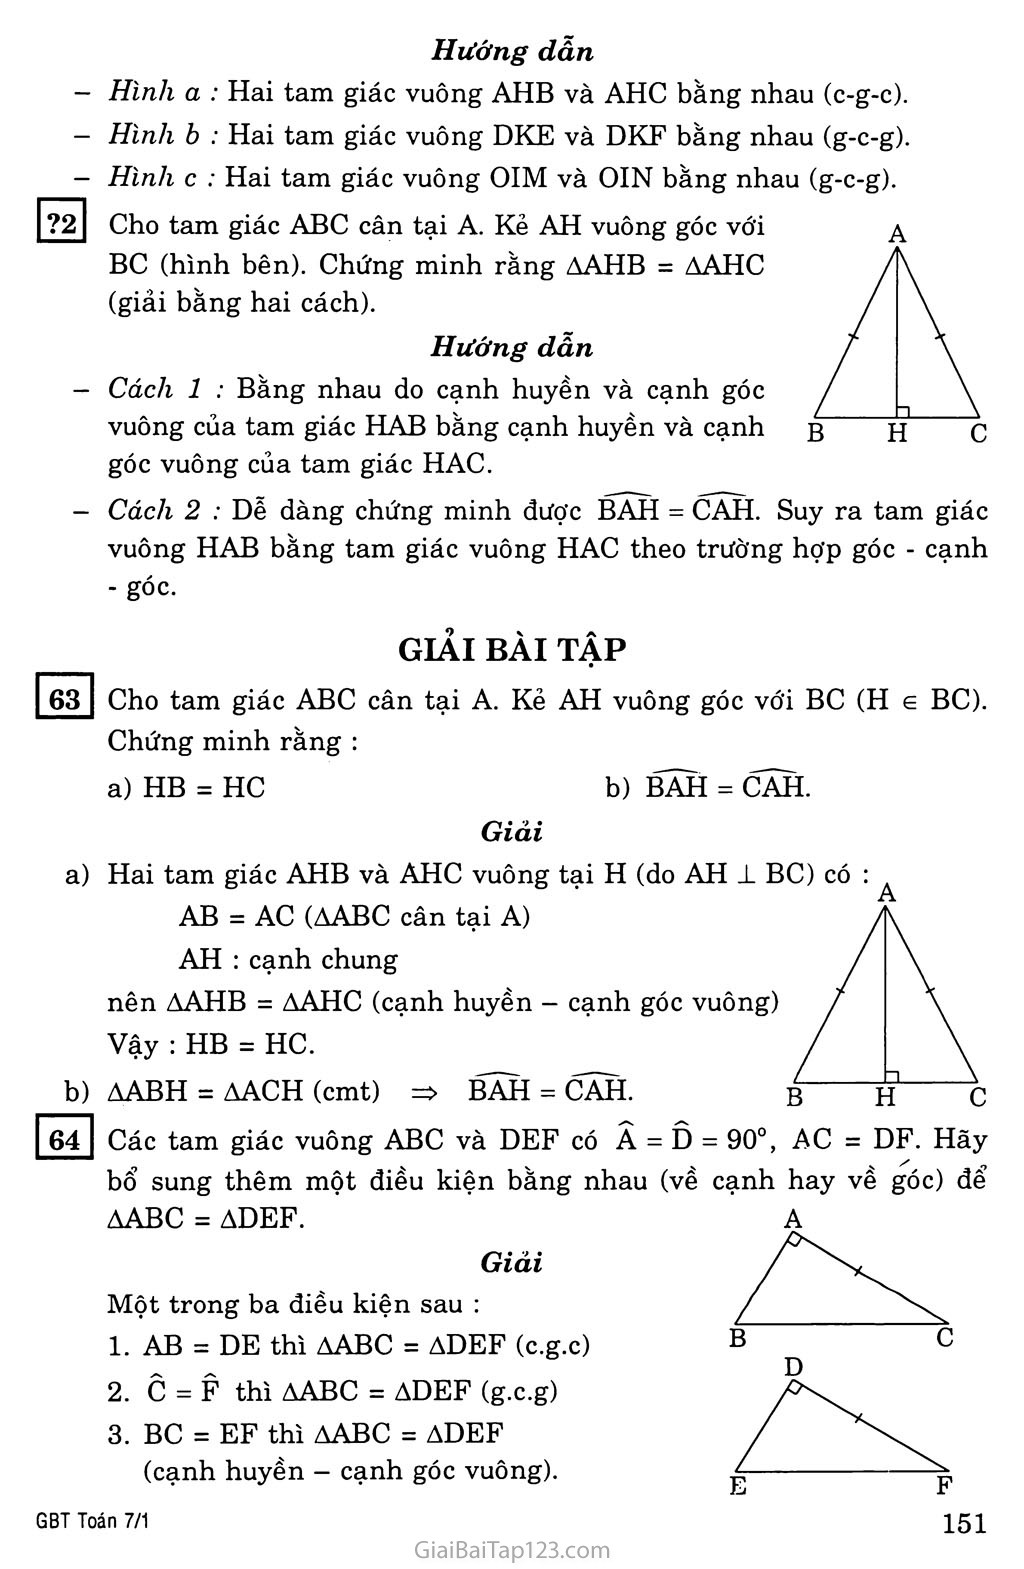 §8. Các trường hợp bằng nhau của tam giác vuông trang 2